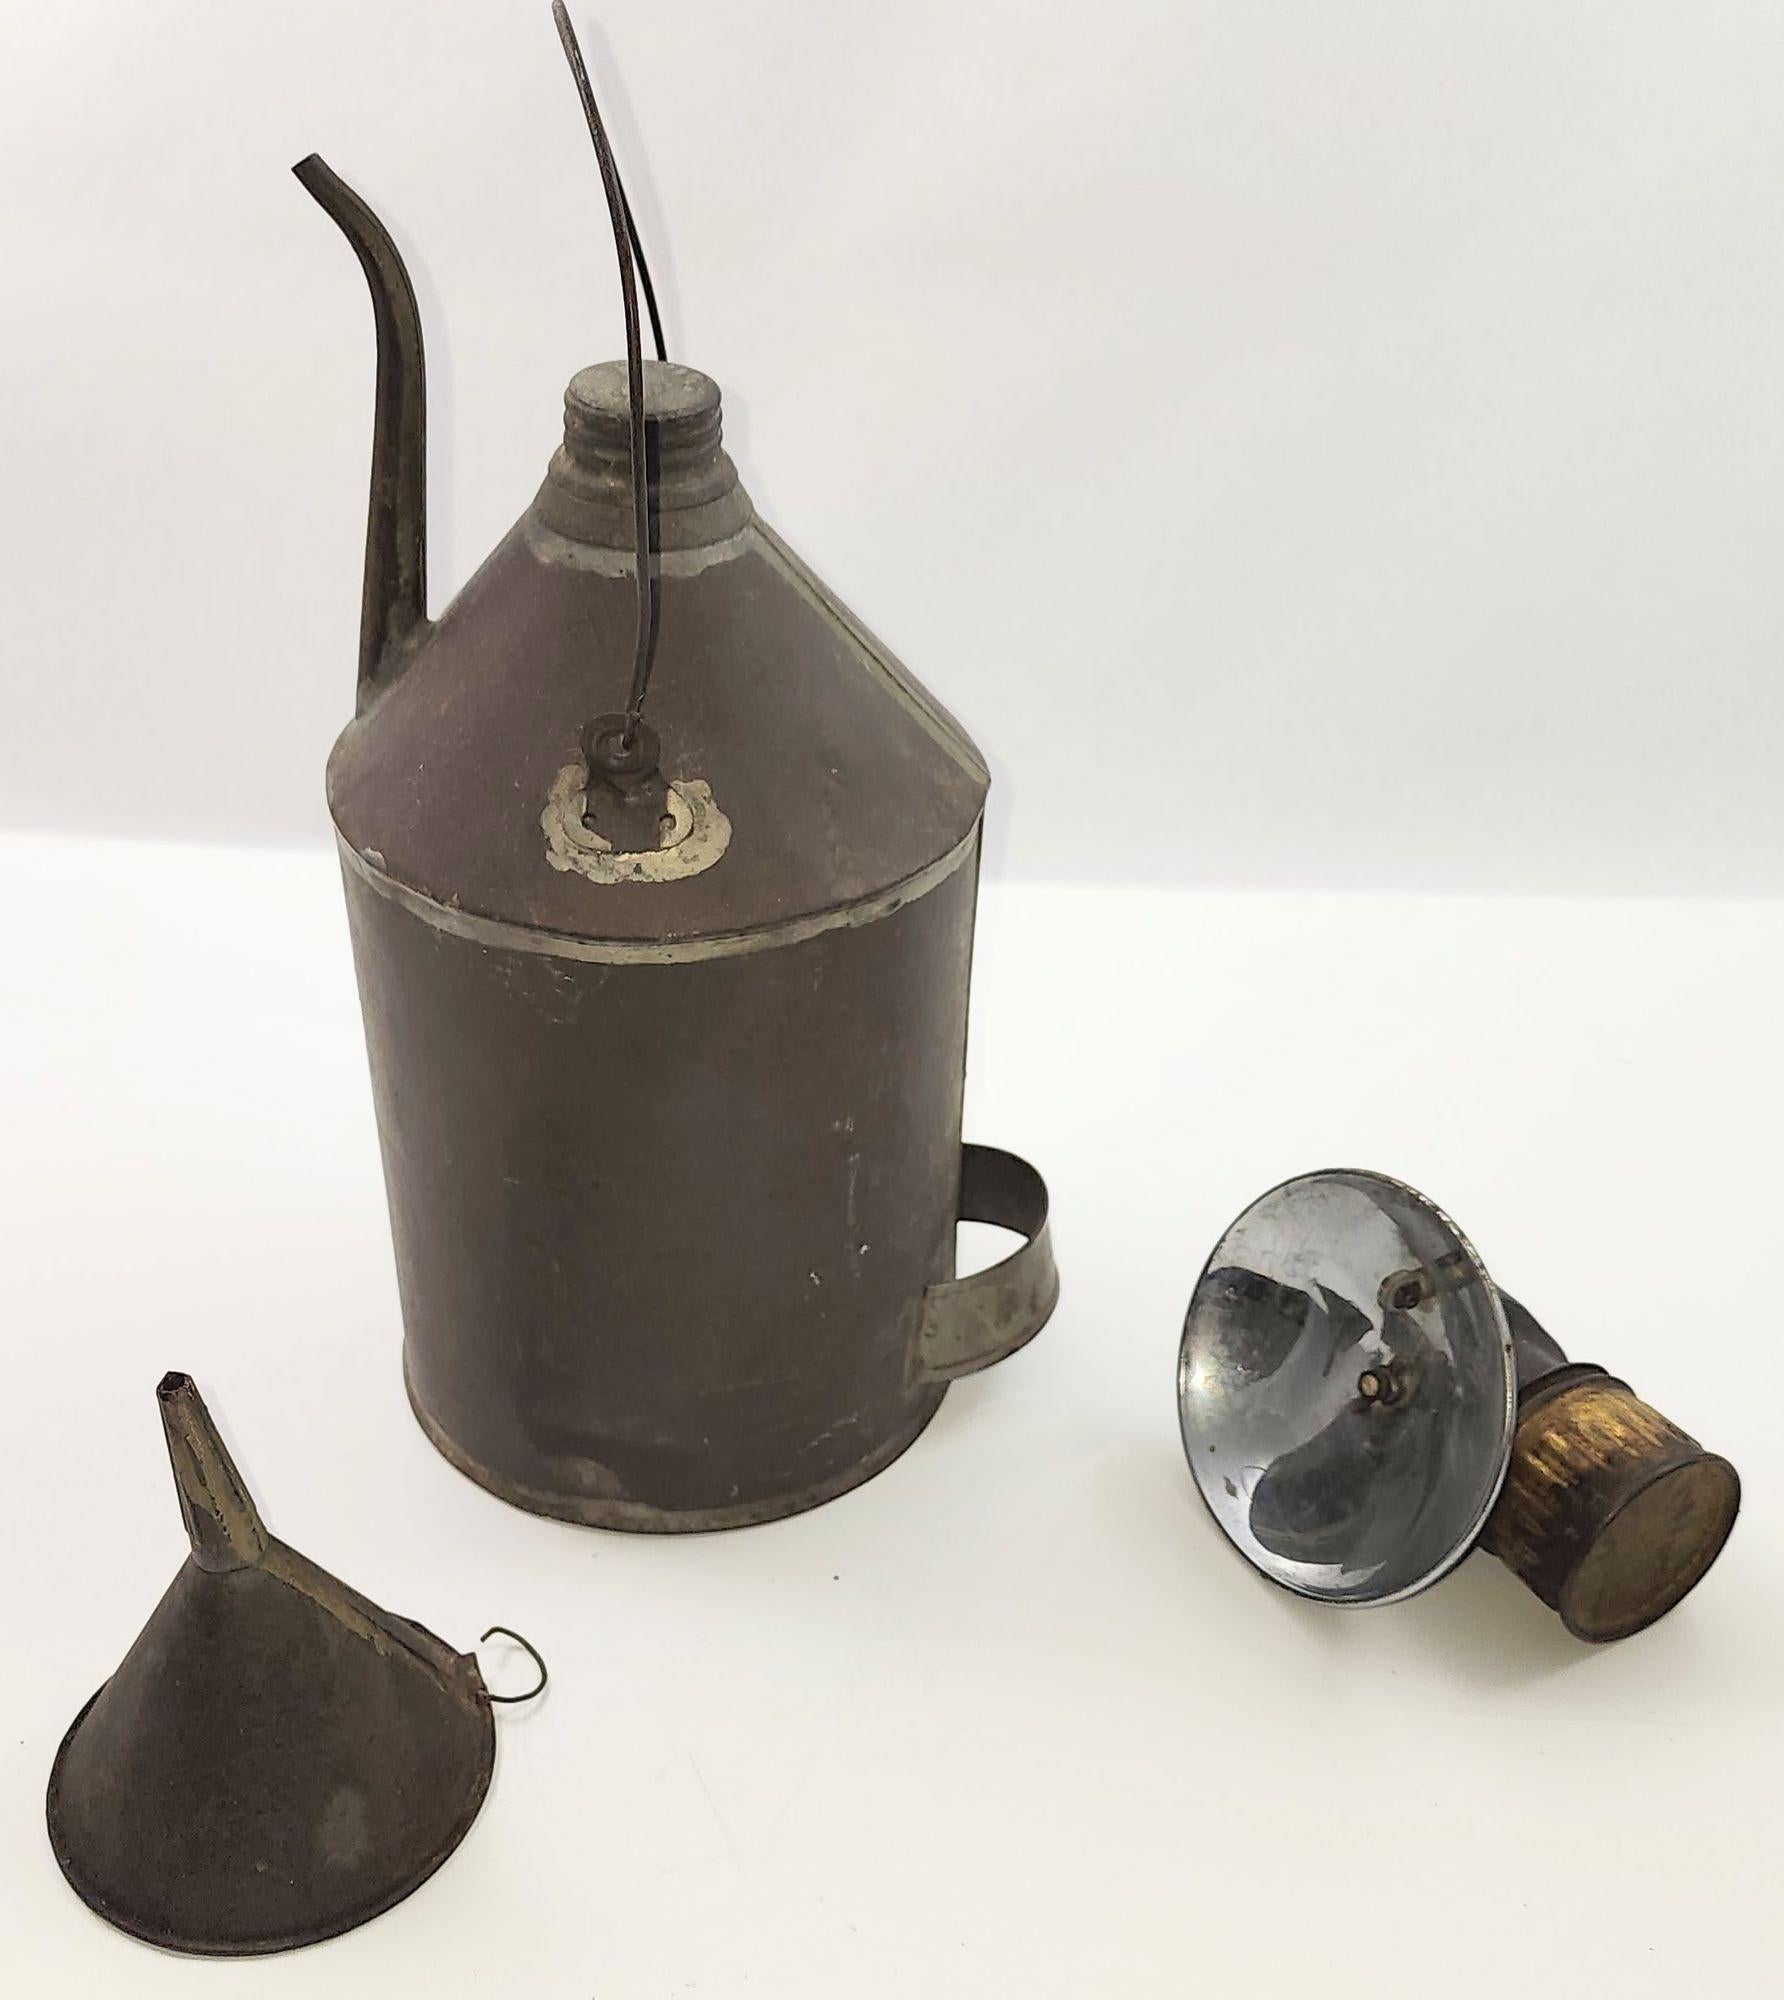 Antike Justrite Carbide Coal Miners Lampe um 1900, die auf einem Helm getragen werden kann, mit einer Coal Oil Can und einem Zinntrichter. Diese von der renommierten Justrite Manufacturing Company in Handarbeit hergestellten Lampen sind aus